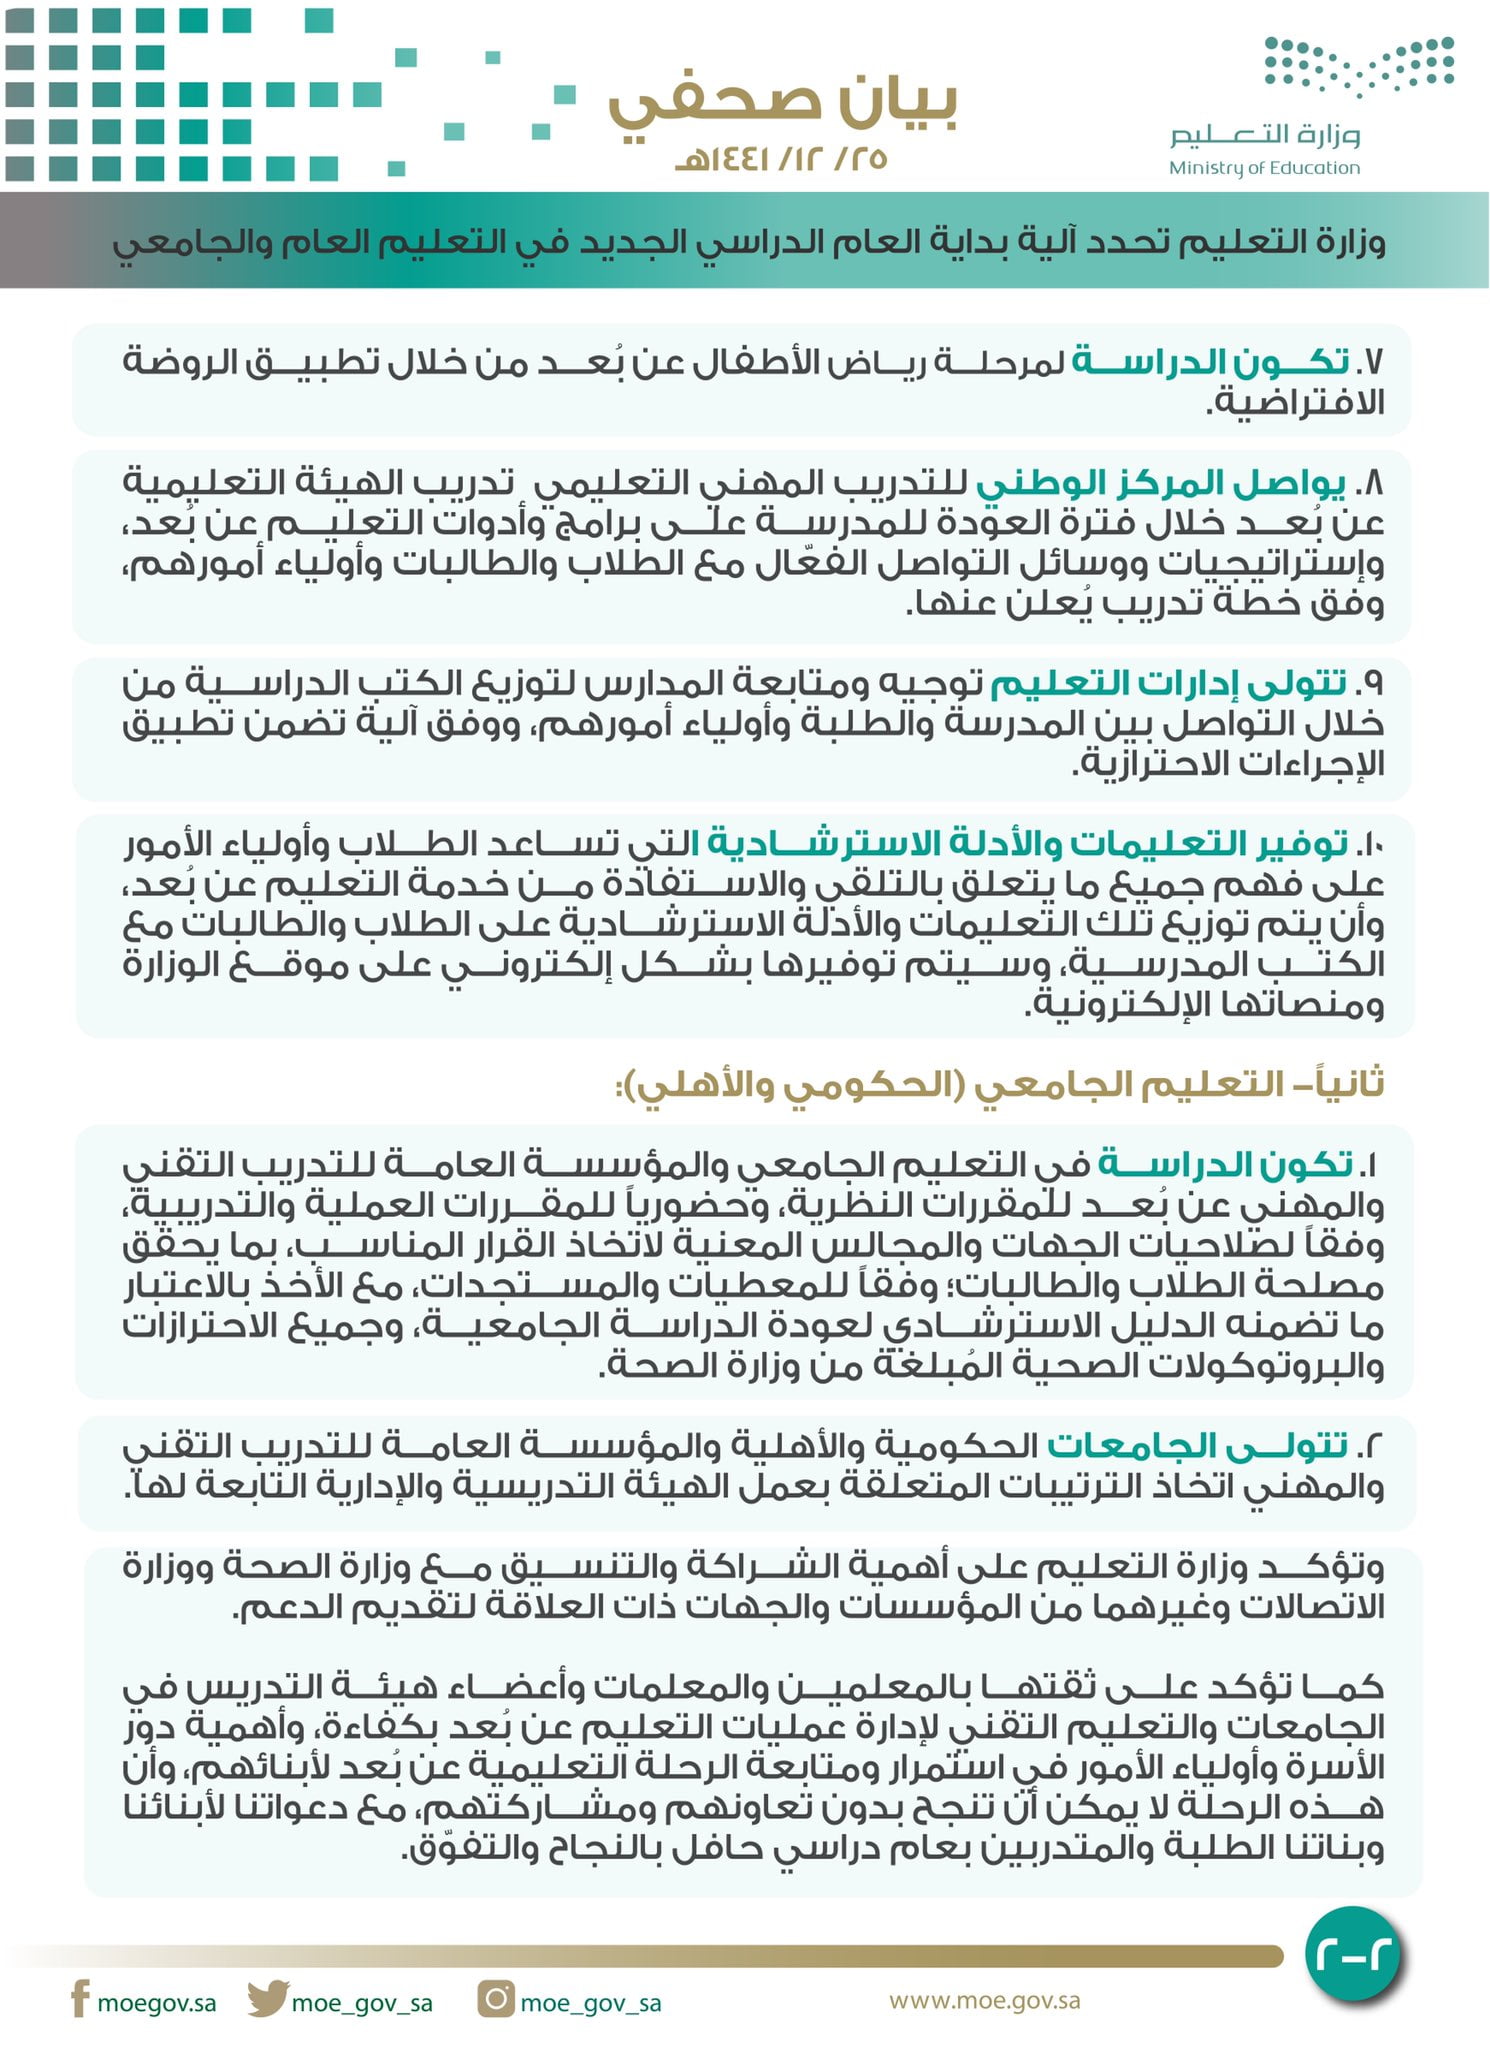 وزارة التعليم تحدد آلية بداية العام الدراسي الجديد في التعليم العام والجامعي صحيفة المناطق السعوديةصحيفة المناطق السعودية